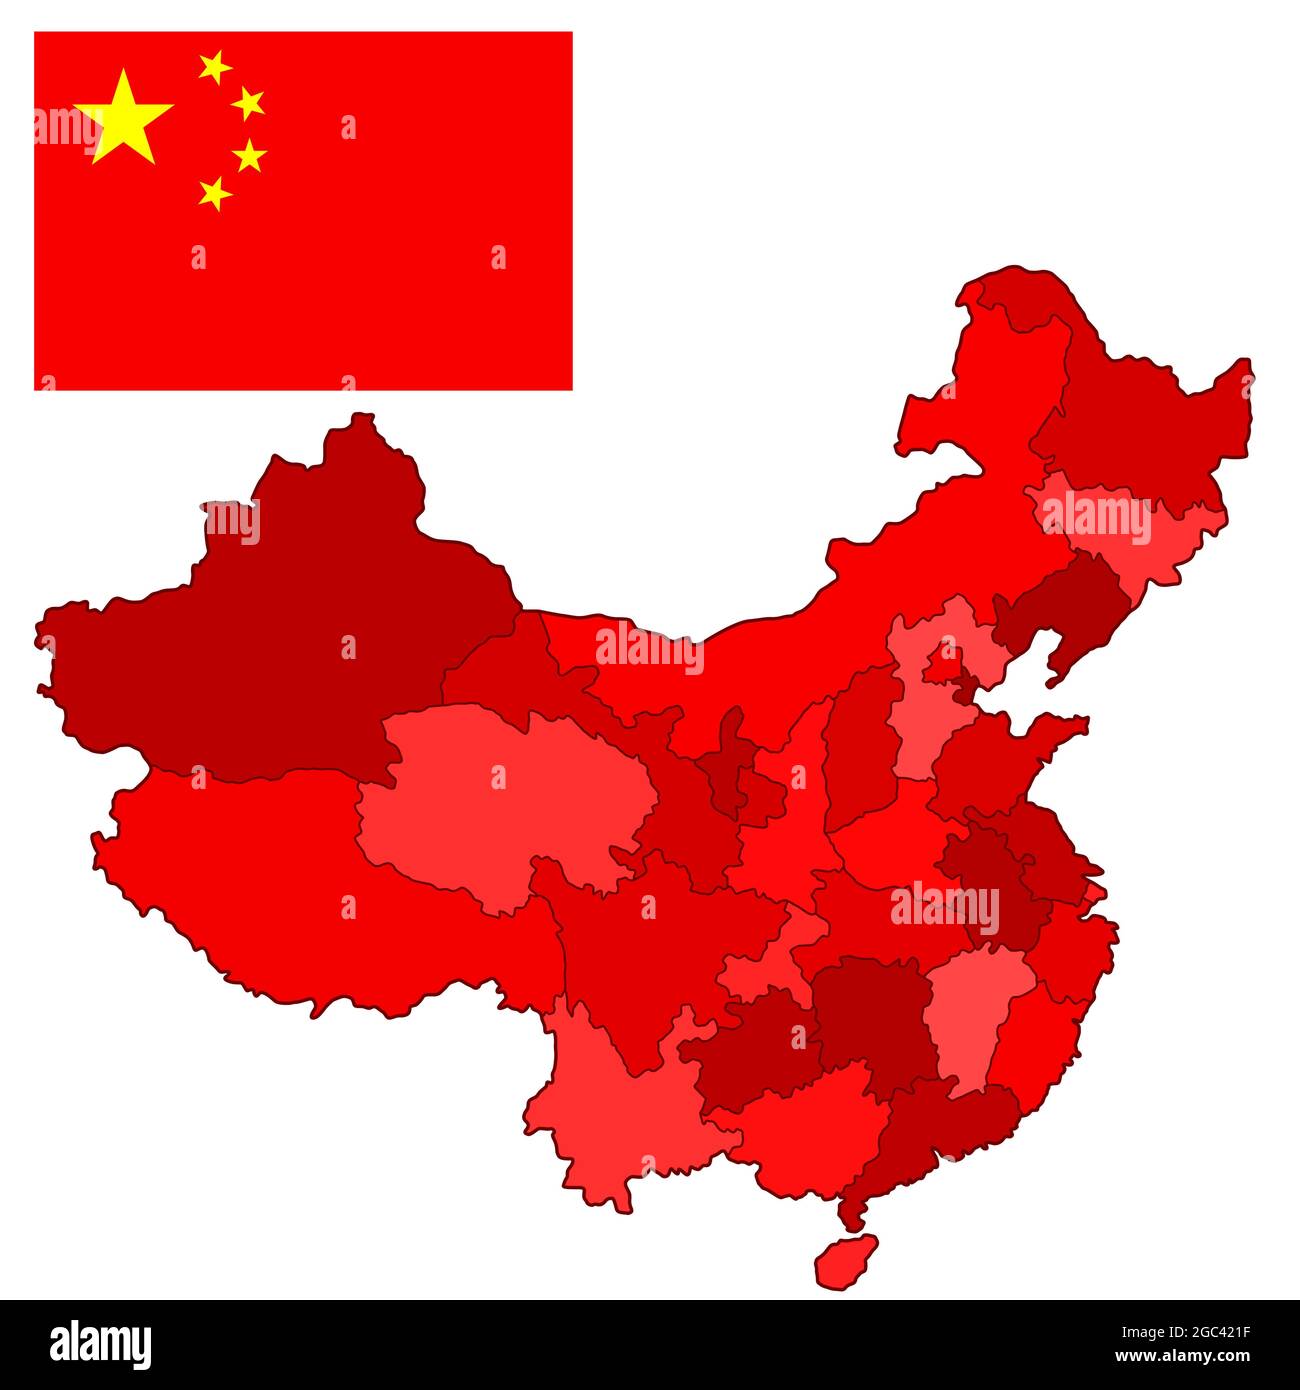 Bandiera nazionale e mappa della Cina. Fonte della mappa: http://www.lib.utexas.edu/maps/middle east and asia/china pol01.jpg Illustrazione Vettoriale